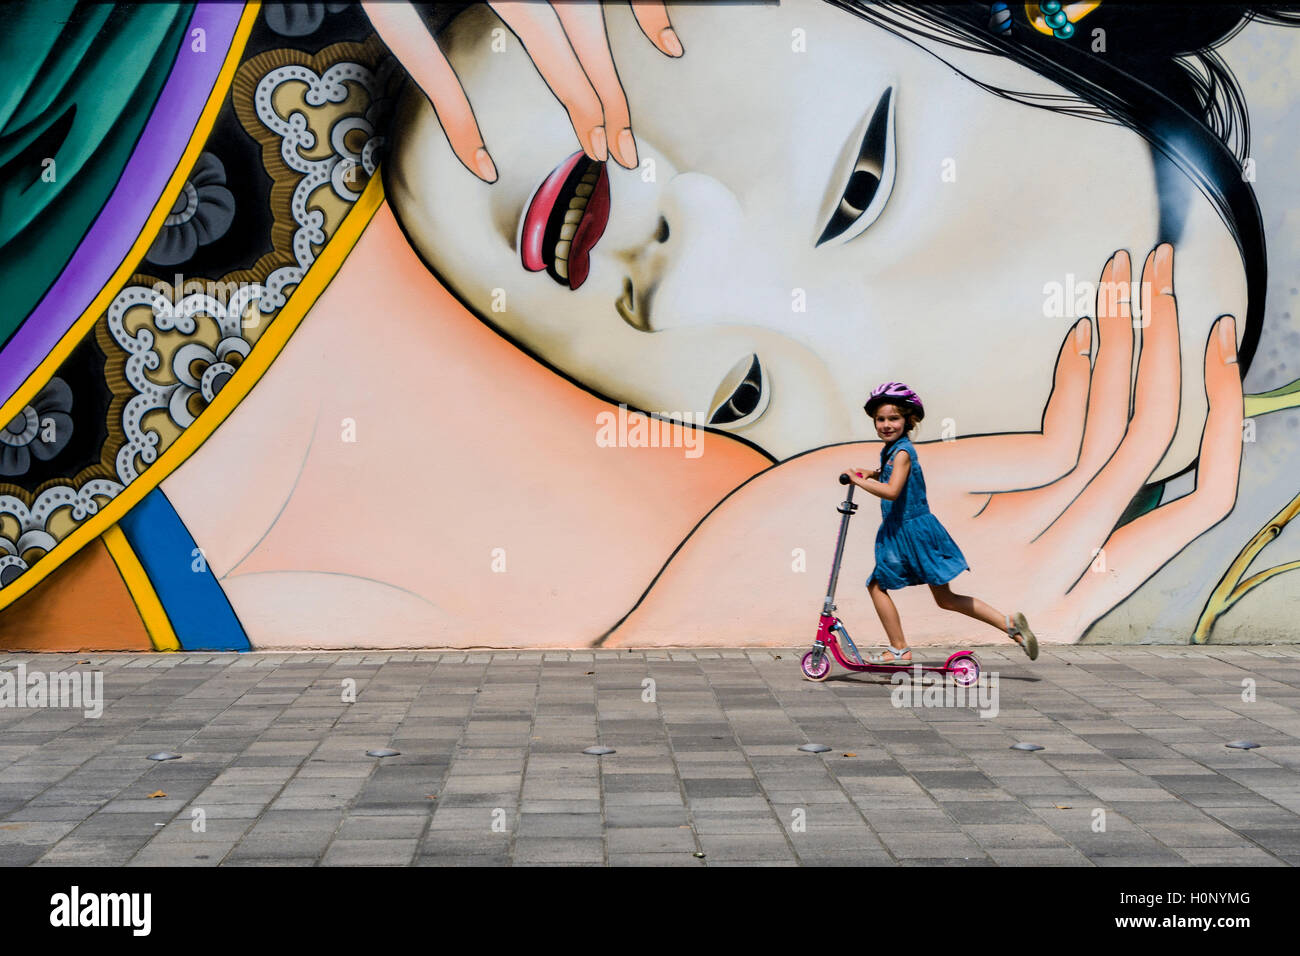 Un graffity avec motif japonais est peint dans un mur de la maison, une petite fille passe sur un scooter pour enfants Banque D'Images